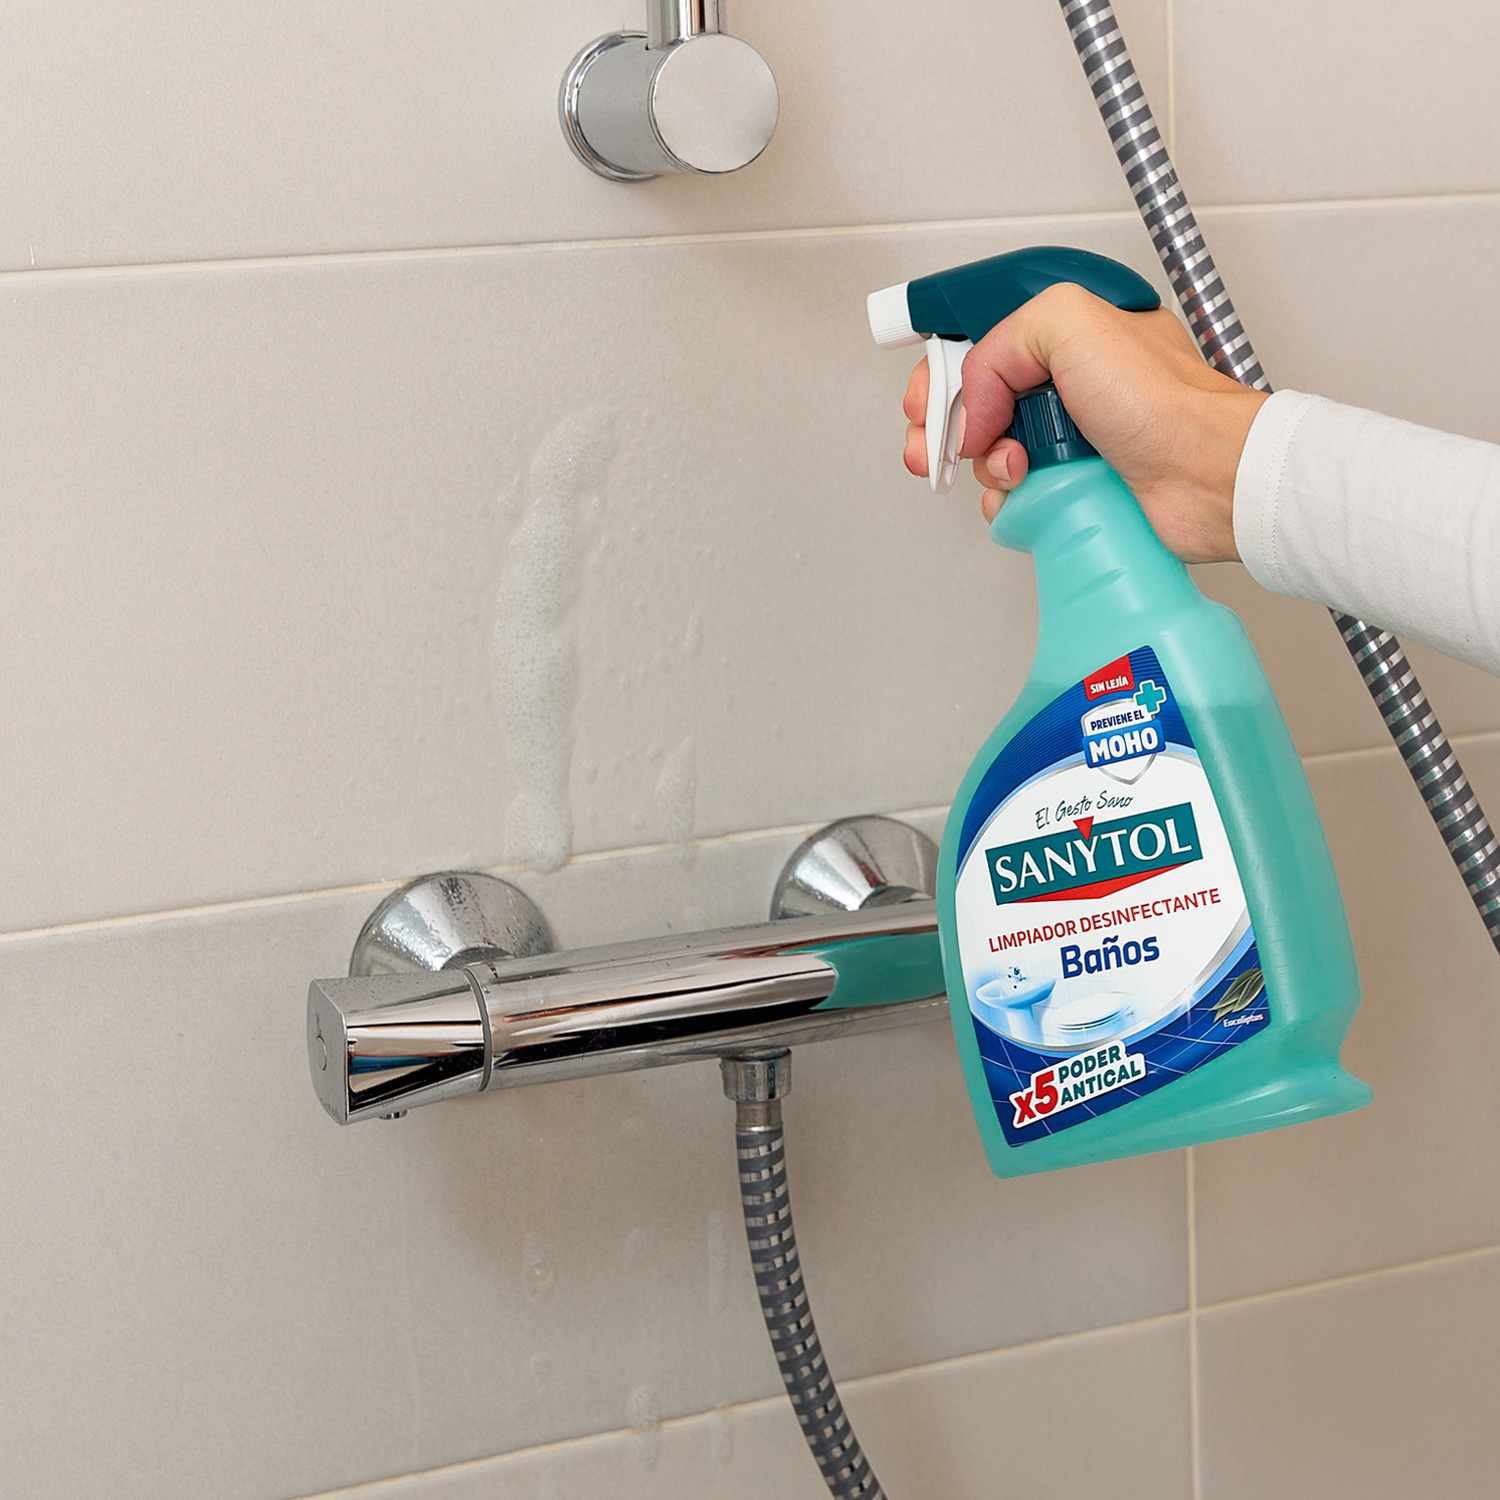 Cómo prevenir el moho en el baño o quitarlo si ya ha aparecido - Sanytol